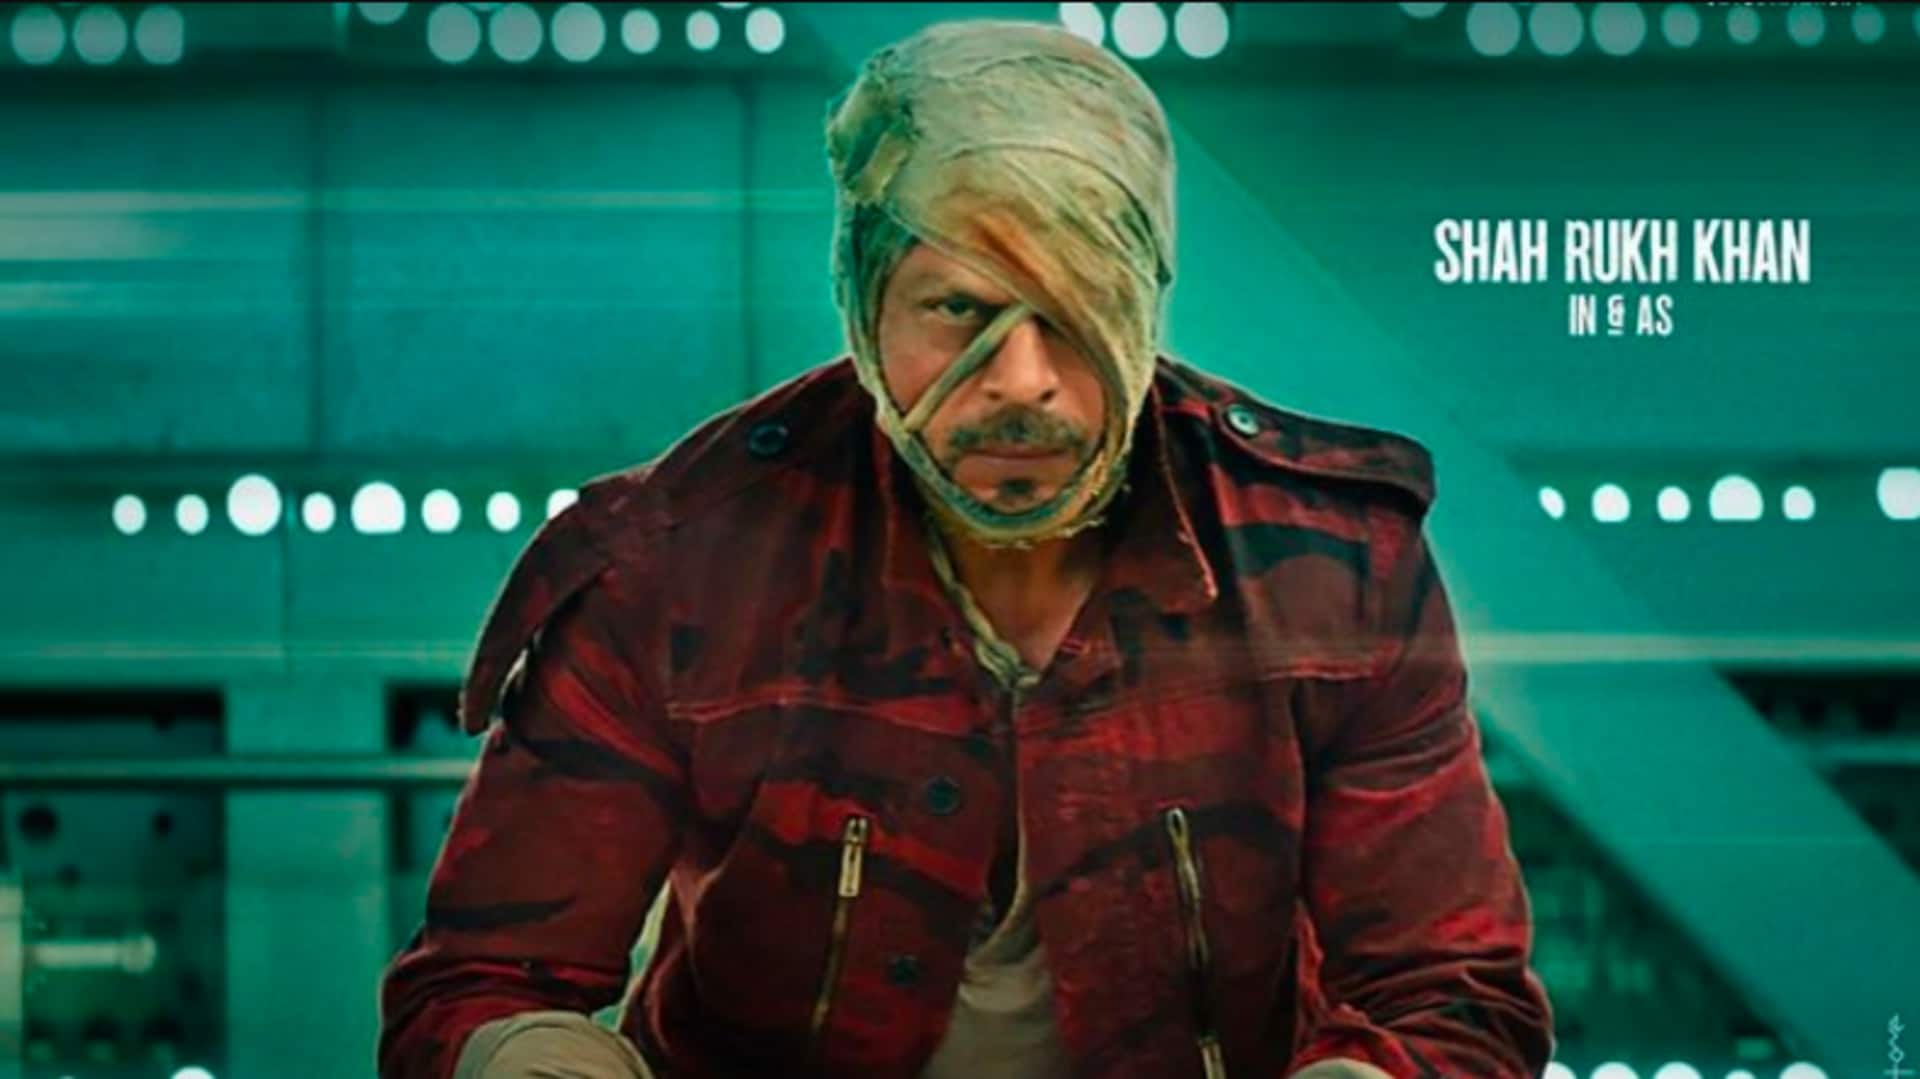 शाहरुख खान की फिल्म 'जवान' की कमाई 1,000 करोड़ रुपये के नजदीक, जानिए रविवार का कारोबार 